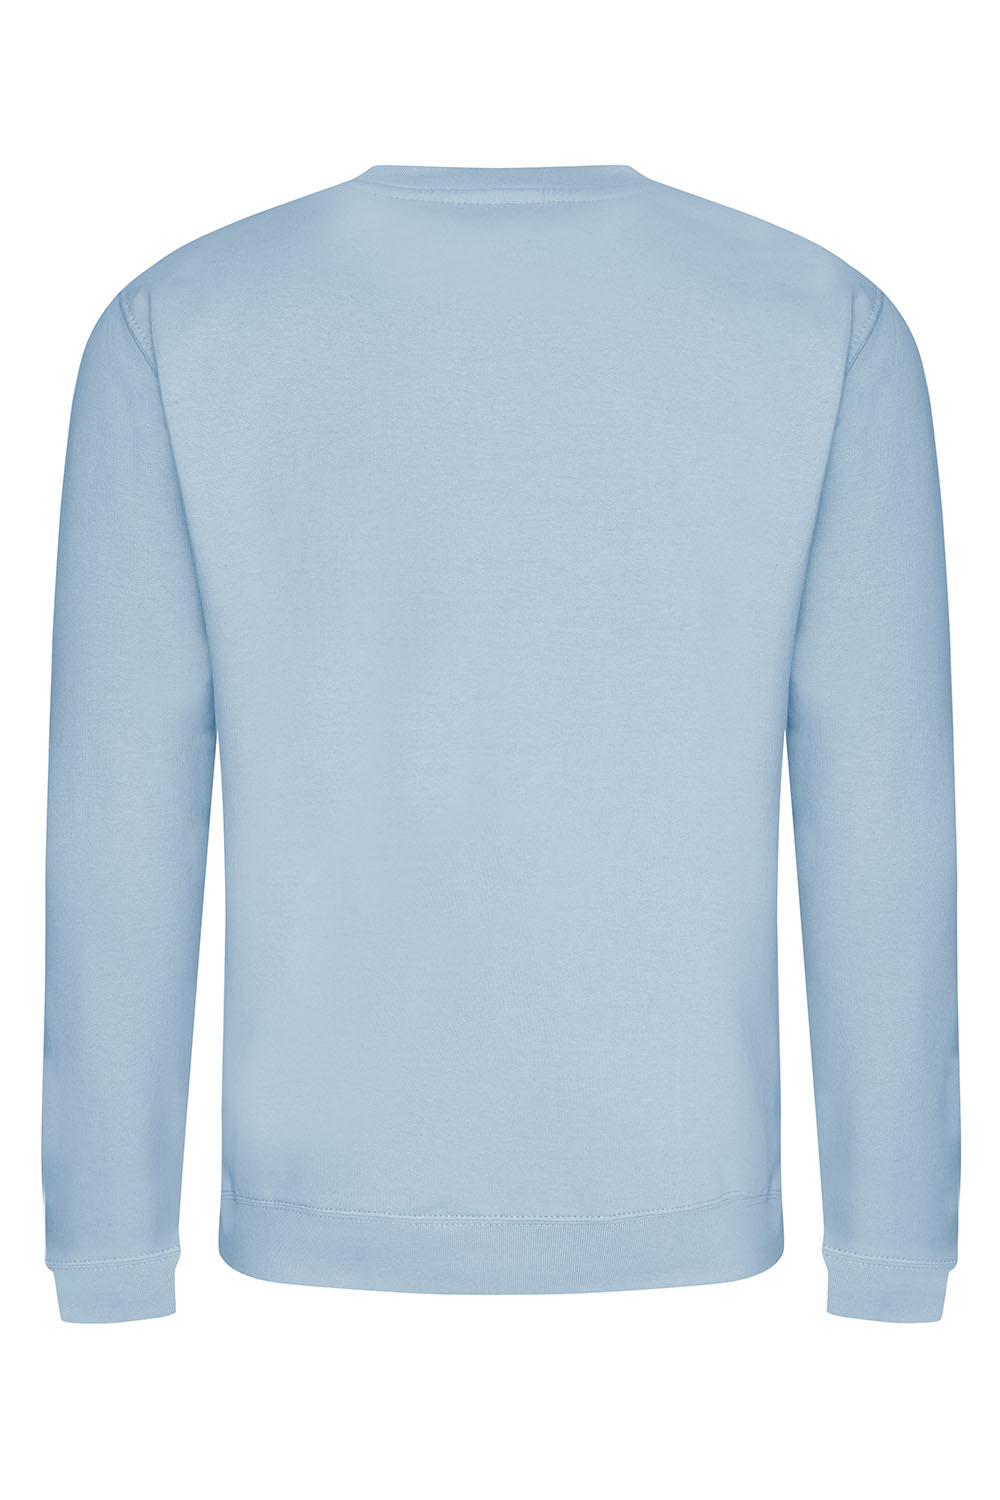 Cherish the Cherries Sweatshirt In Sky Blue (Custom Pack)